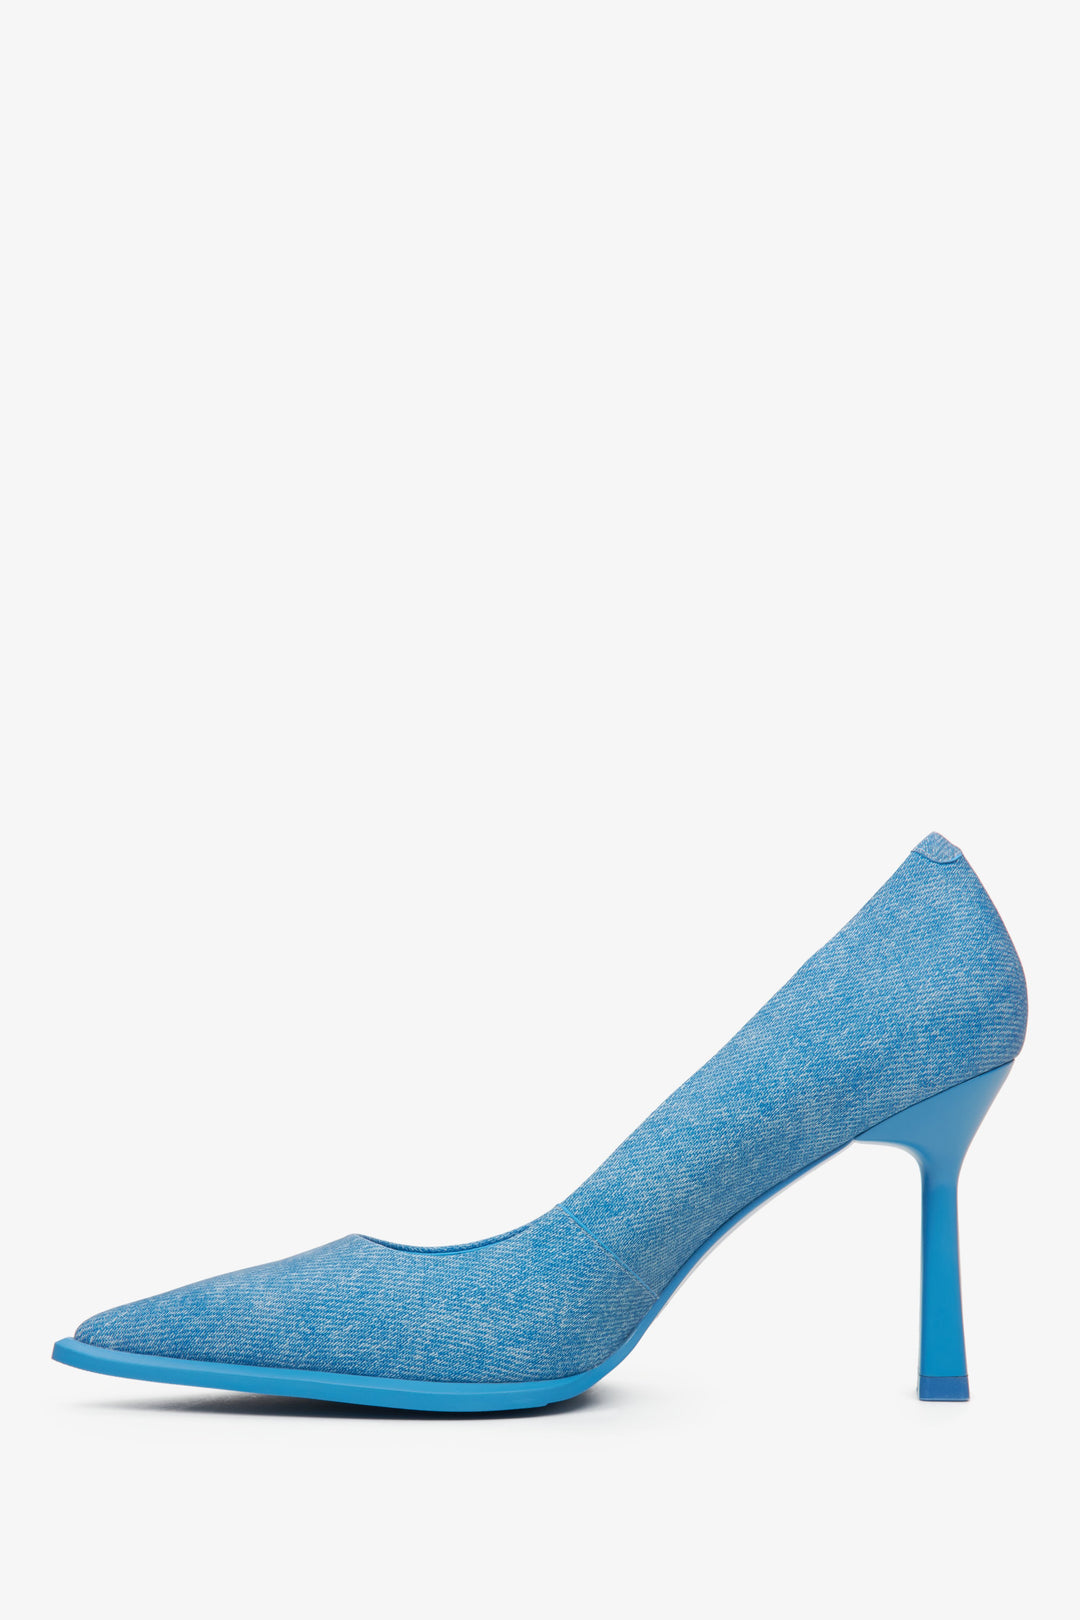 Women's blue denim pumps by Estro - shoe profile.